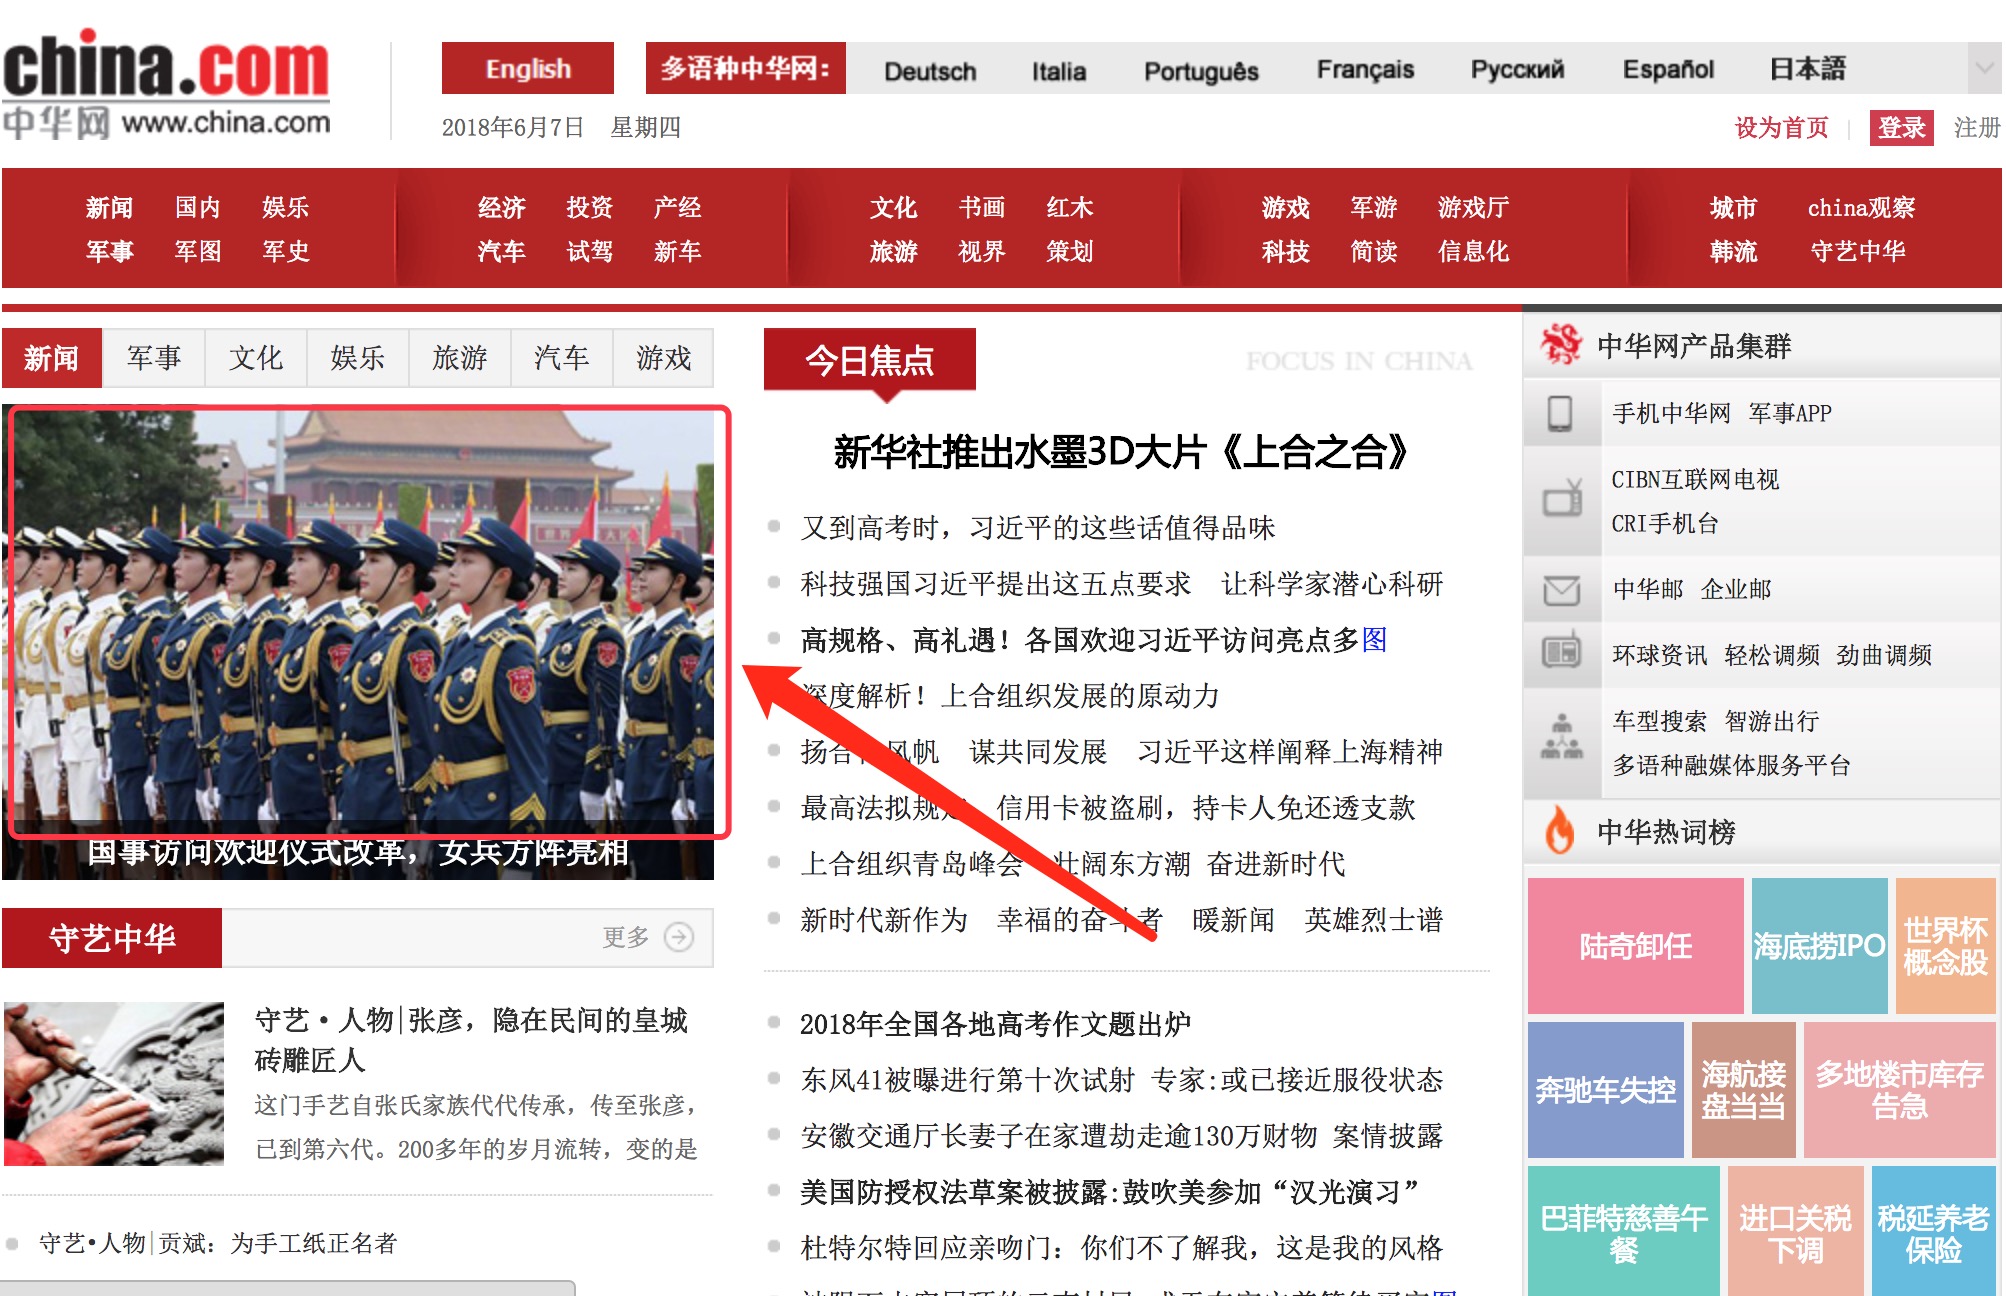 中华网科技软文发布——首页焦点图广告展现